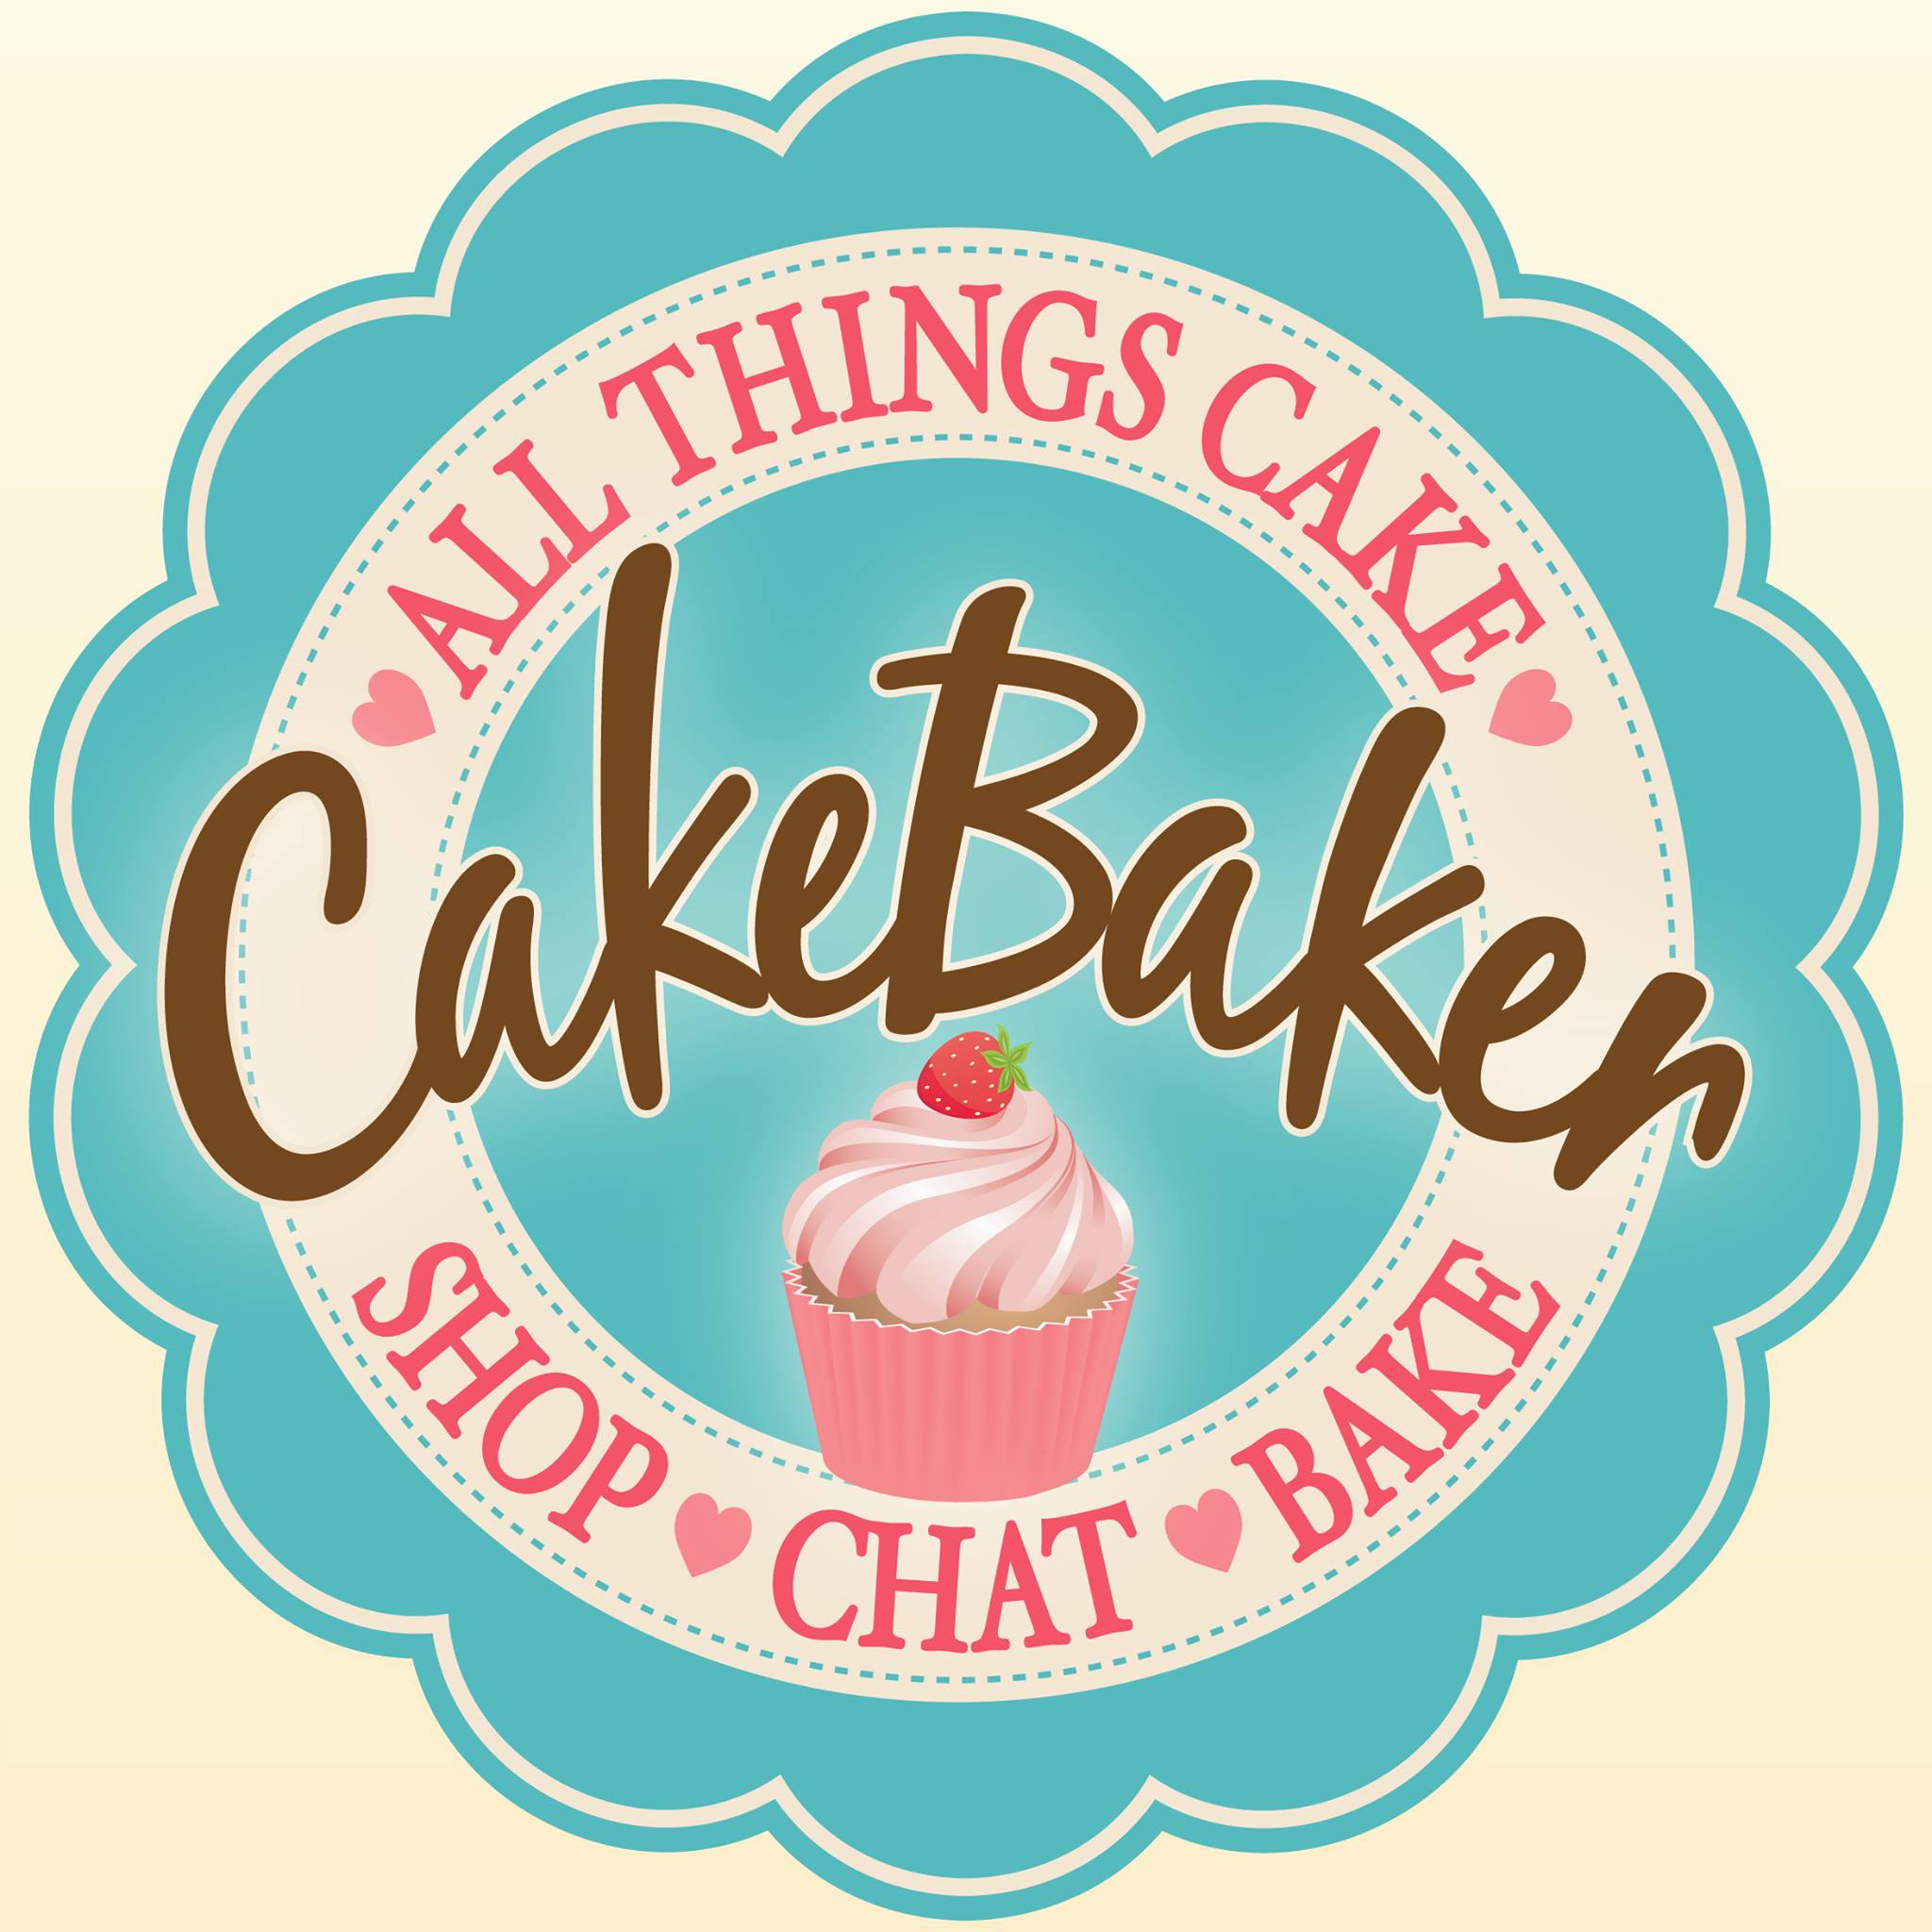 cakebaker1.jpg